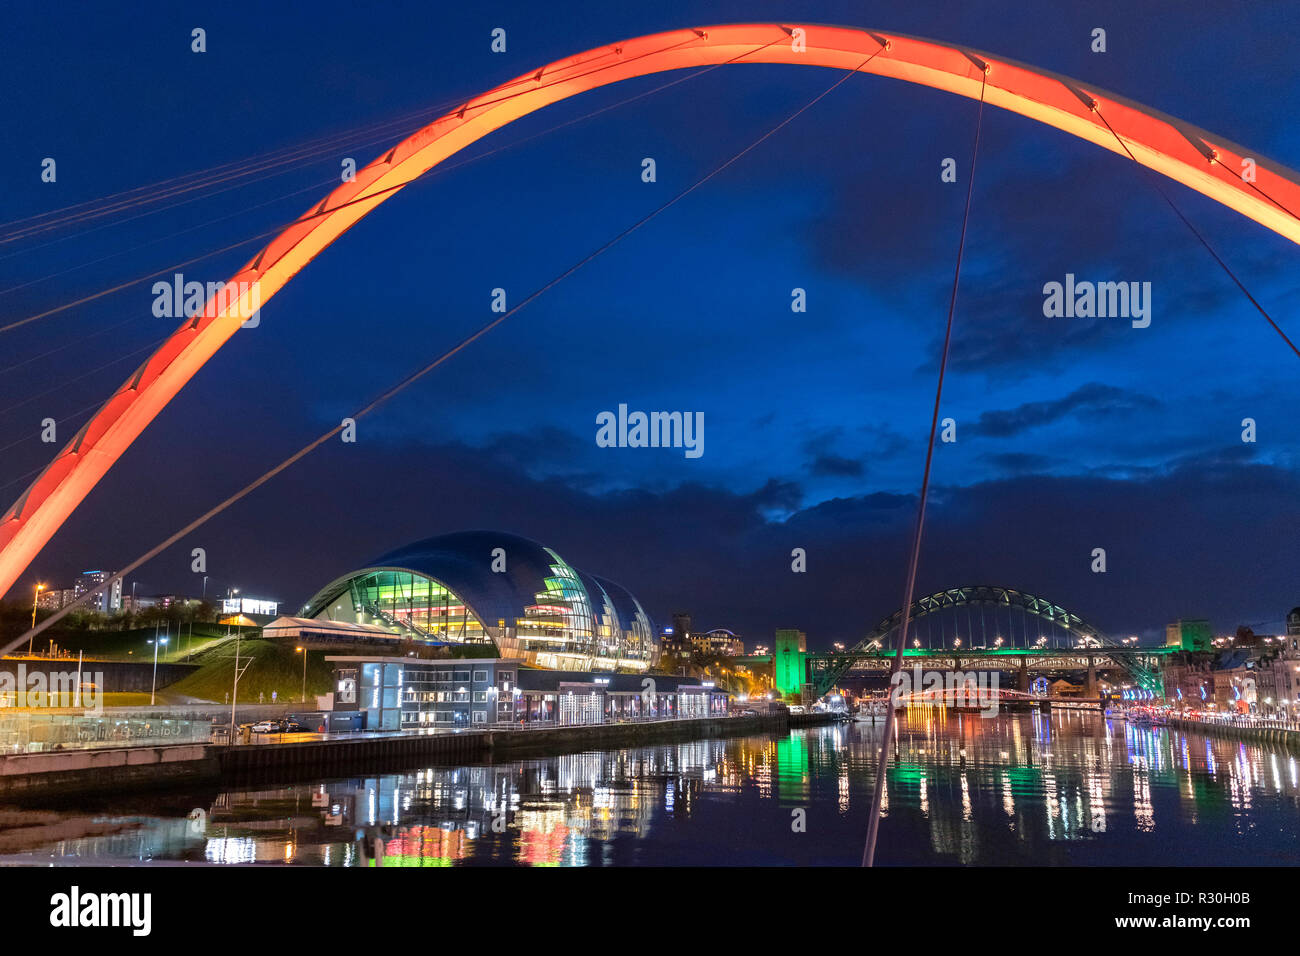 Der Gateshead Millennium Bridge in Richtung der Sage Gateshead und Tyne Bridge, Fluss Tyne, Newcastle upon Tyne, Tyne und Wear, England, Großbritannien Stockfoto